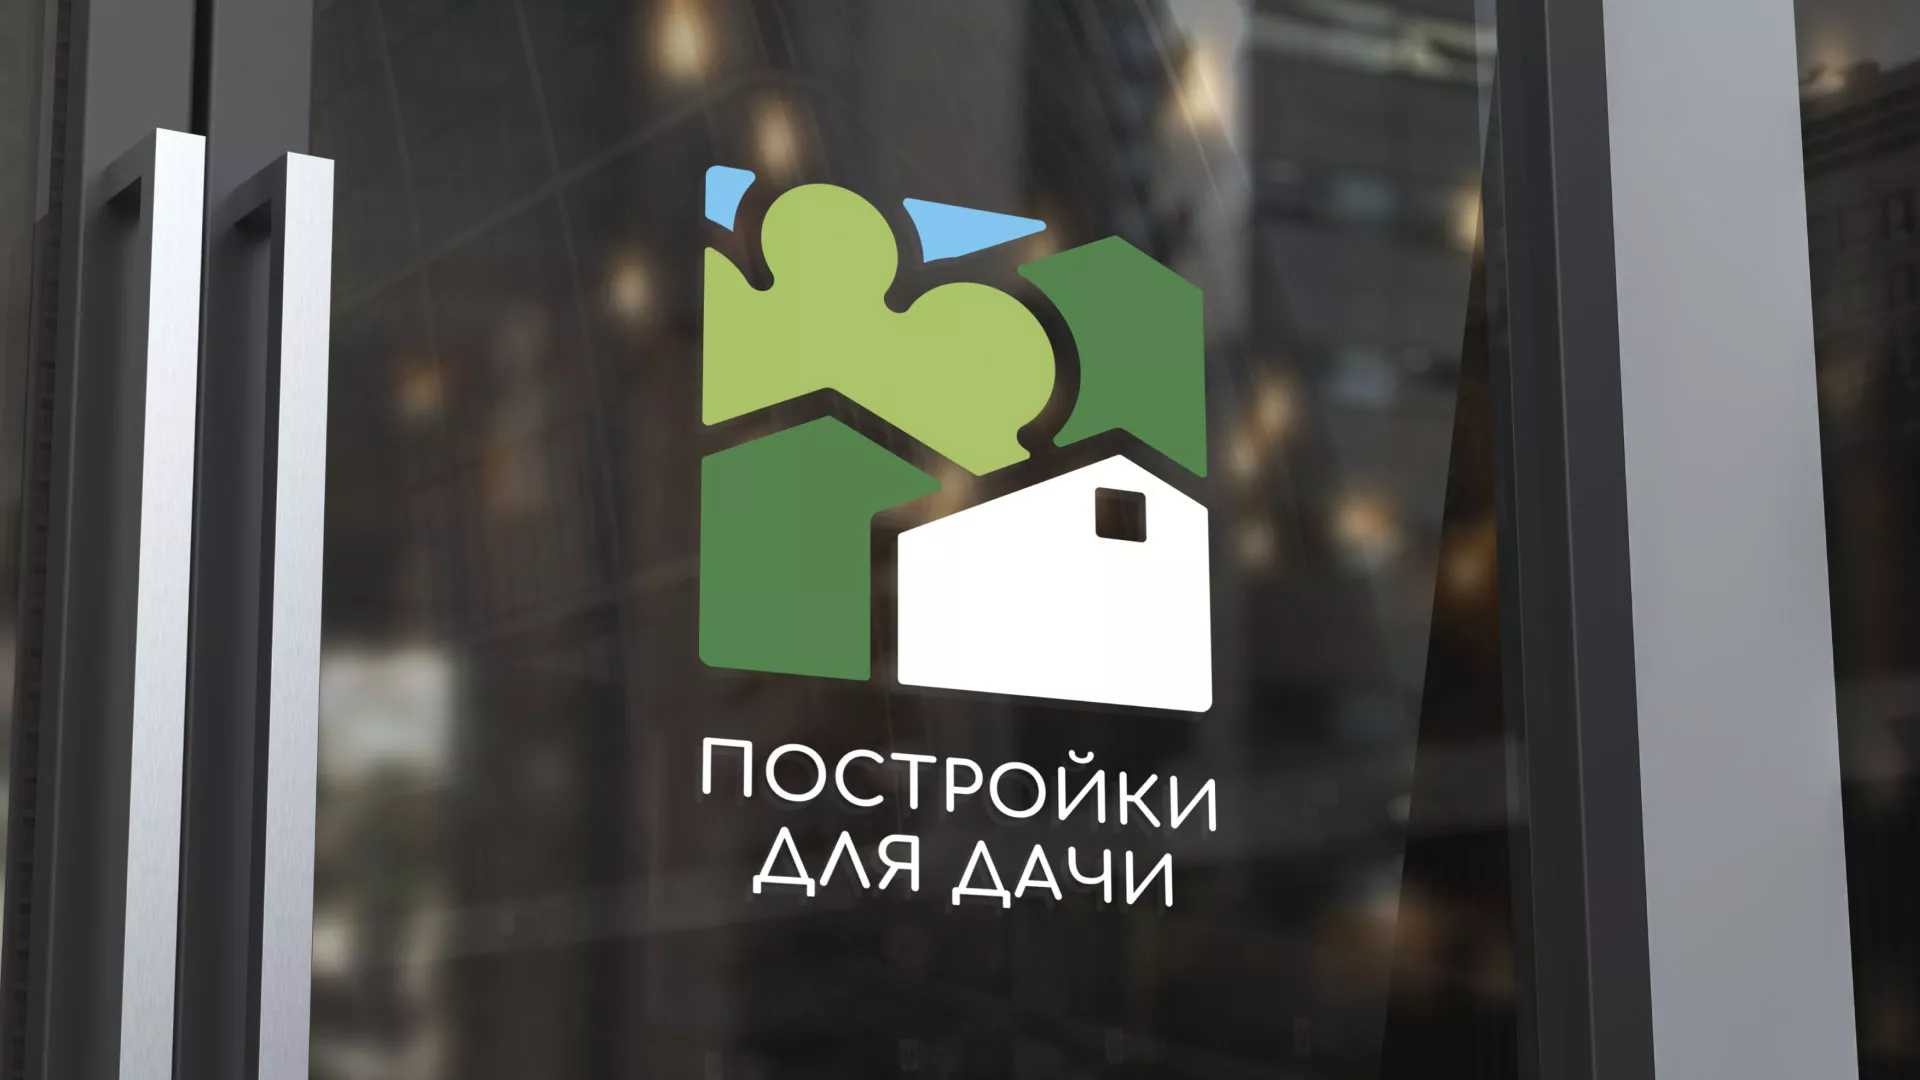 Разработка логотипа в Рассказово для компании «Постройки для дачи»